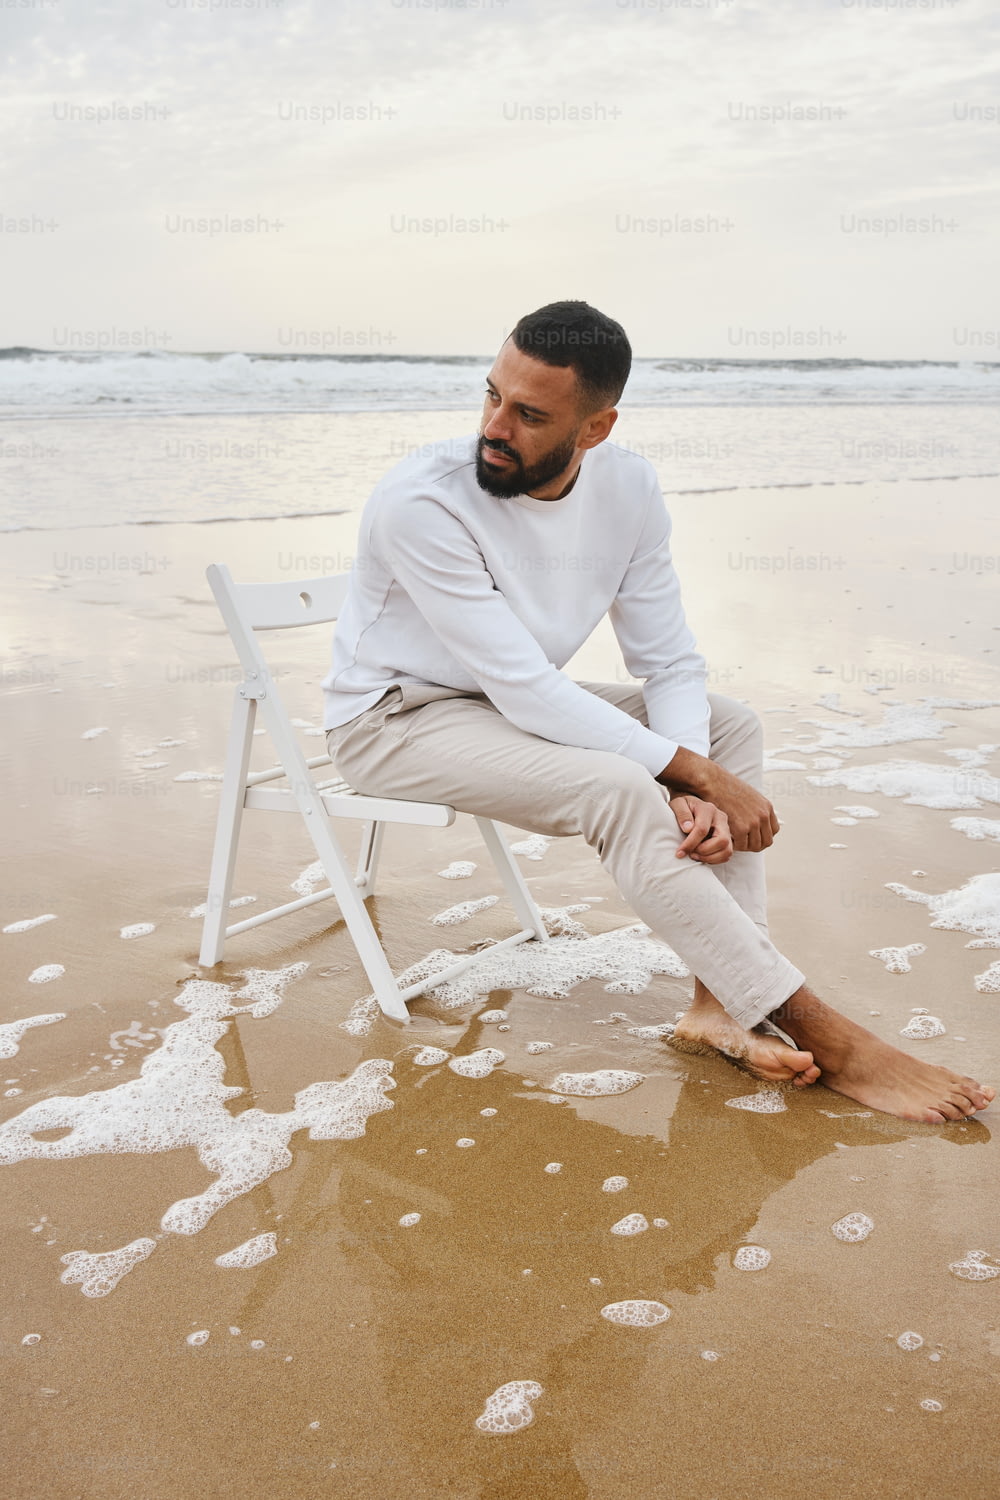 해변 꼭대기에 있는 하얀 의자 위에 앉아 있는 남자